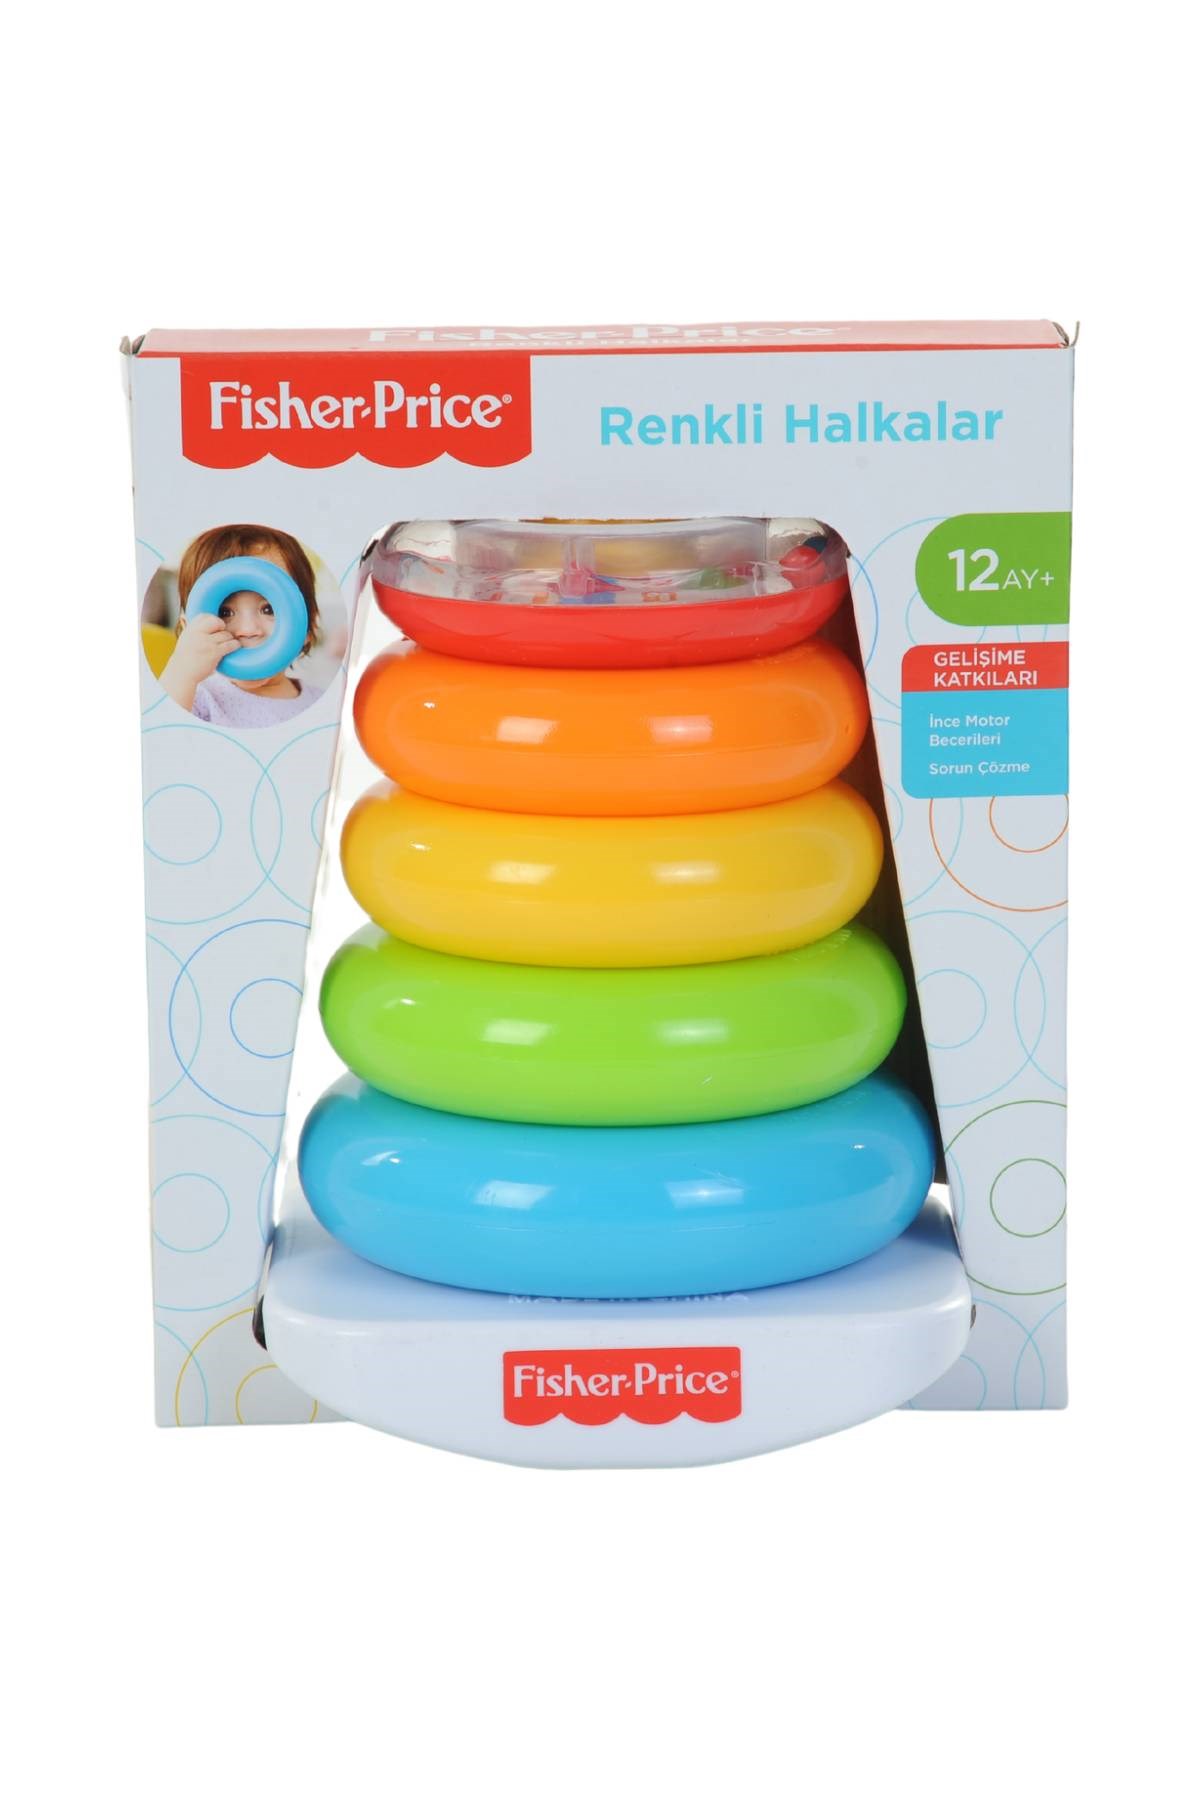 FisheR-Price Renkli Halkalar